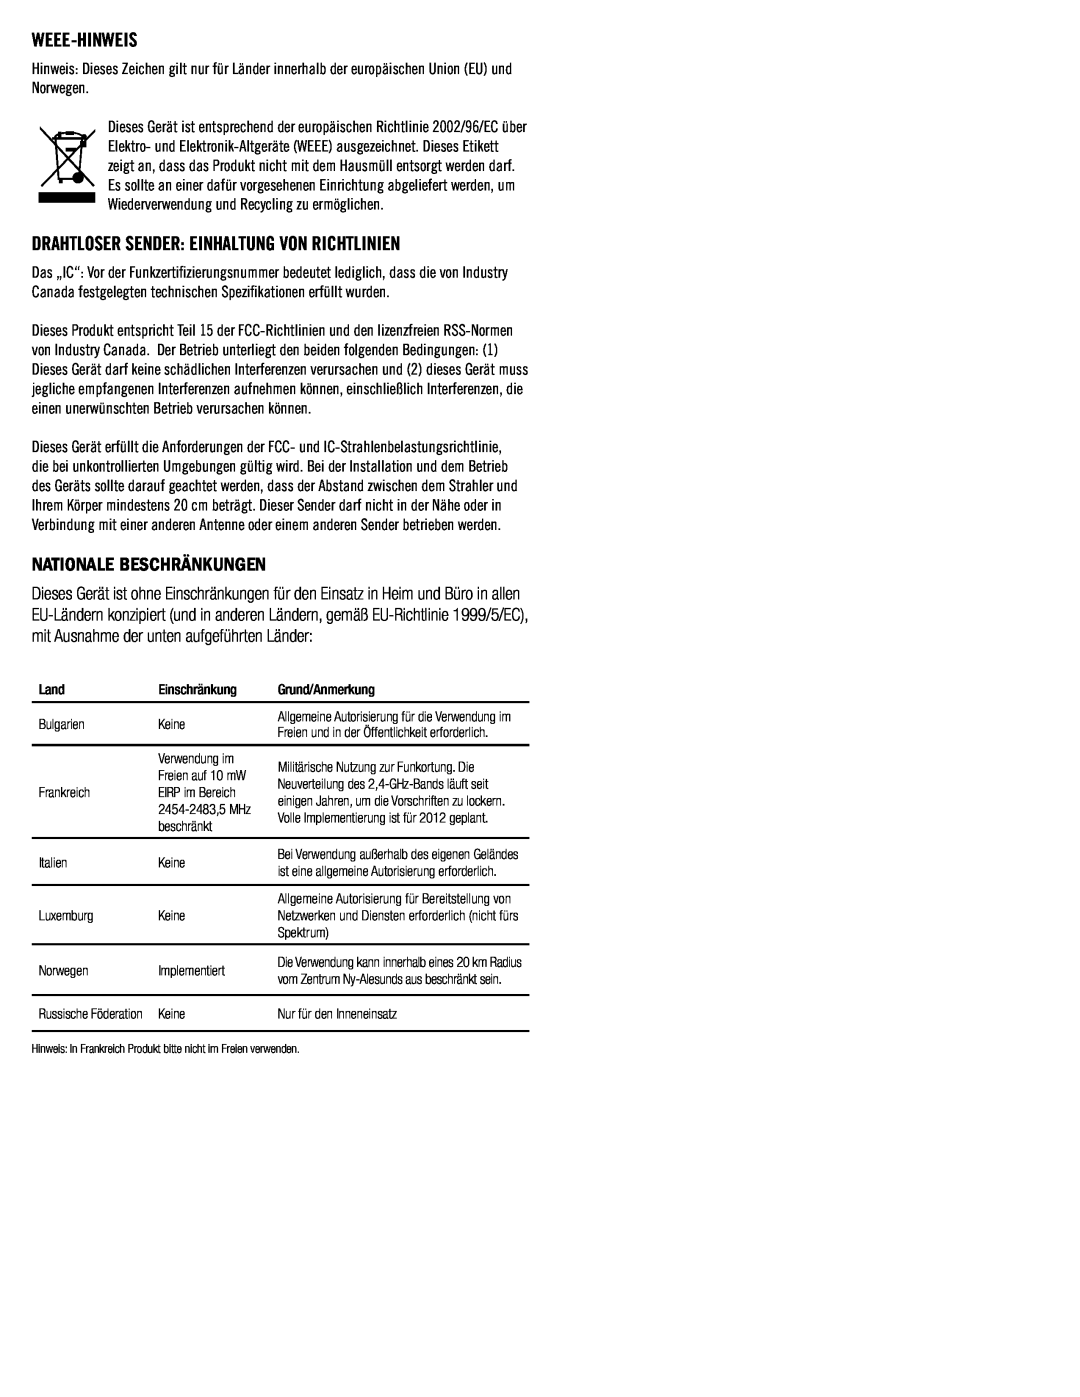 Klipsch SB3 owner manual Nationale Beschränkungen, Weee-Hinweis, Drahtloser Sender Einhaltung Von Richtlinien 